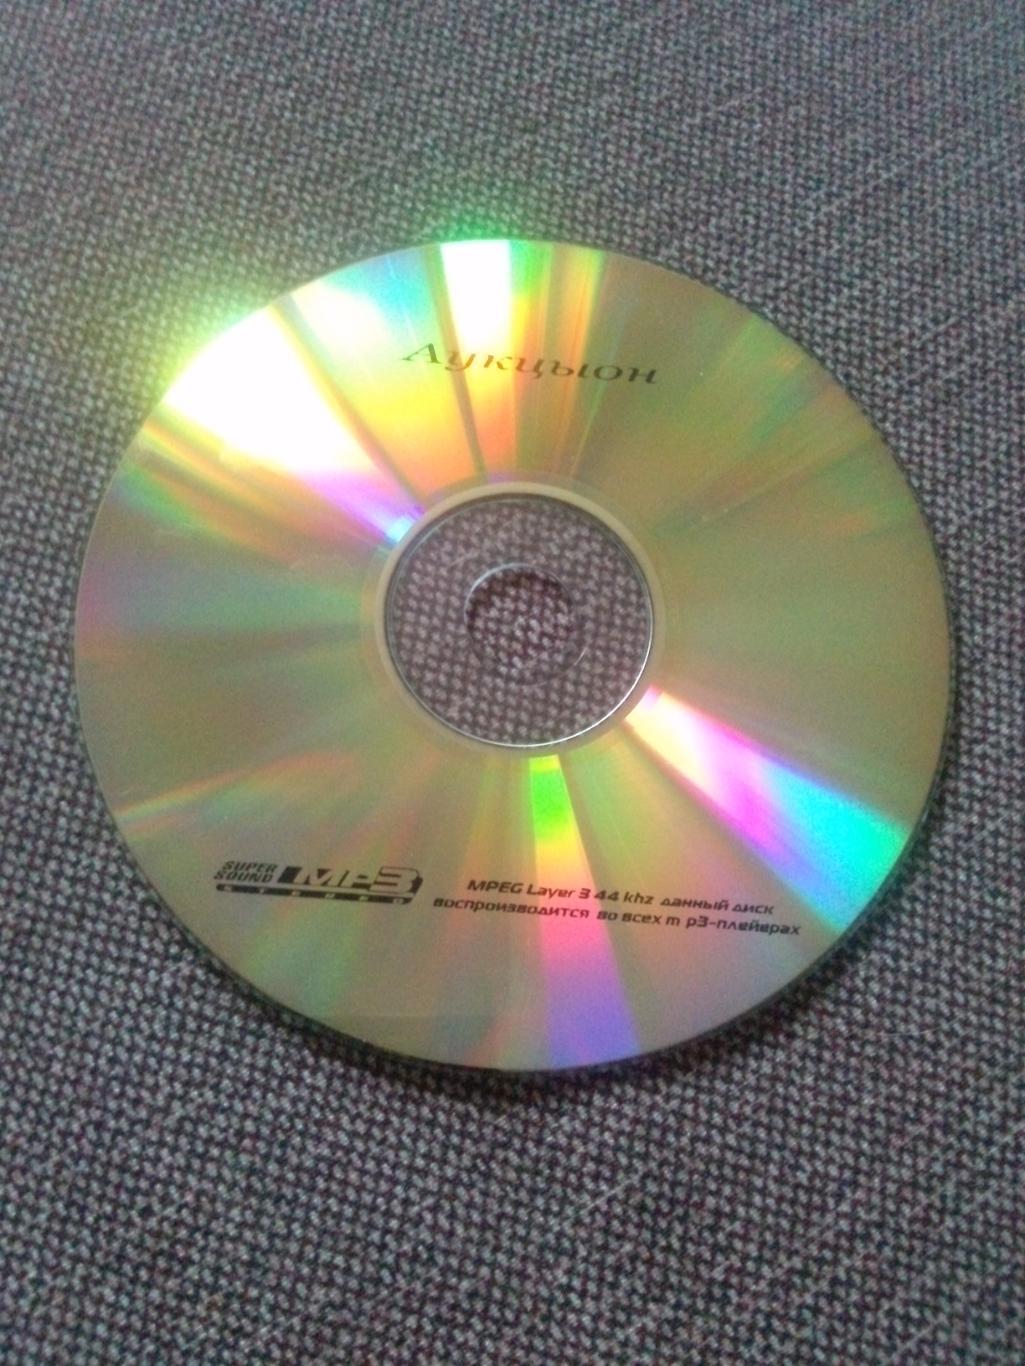 MP - 3 CD диск : группаАукцыон1986 - 2000 гг. 11 альбомов (Русский рок) 2